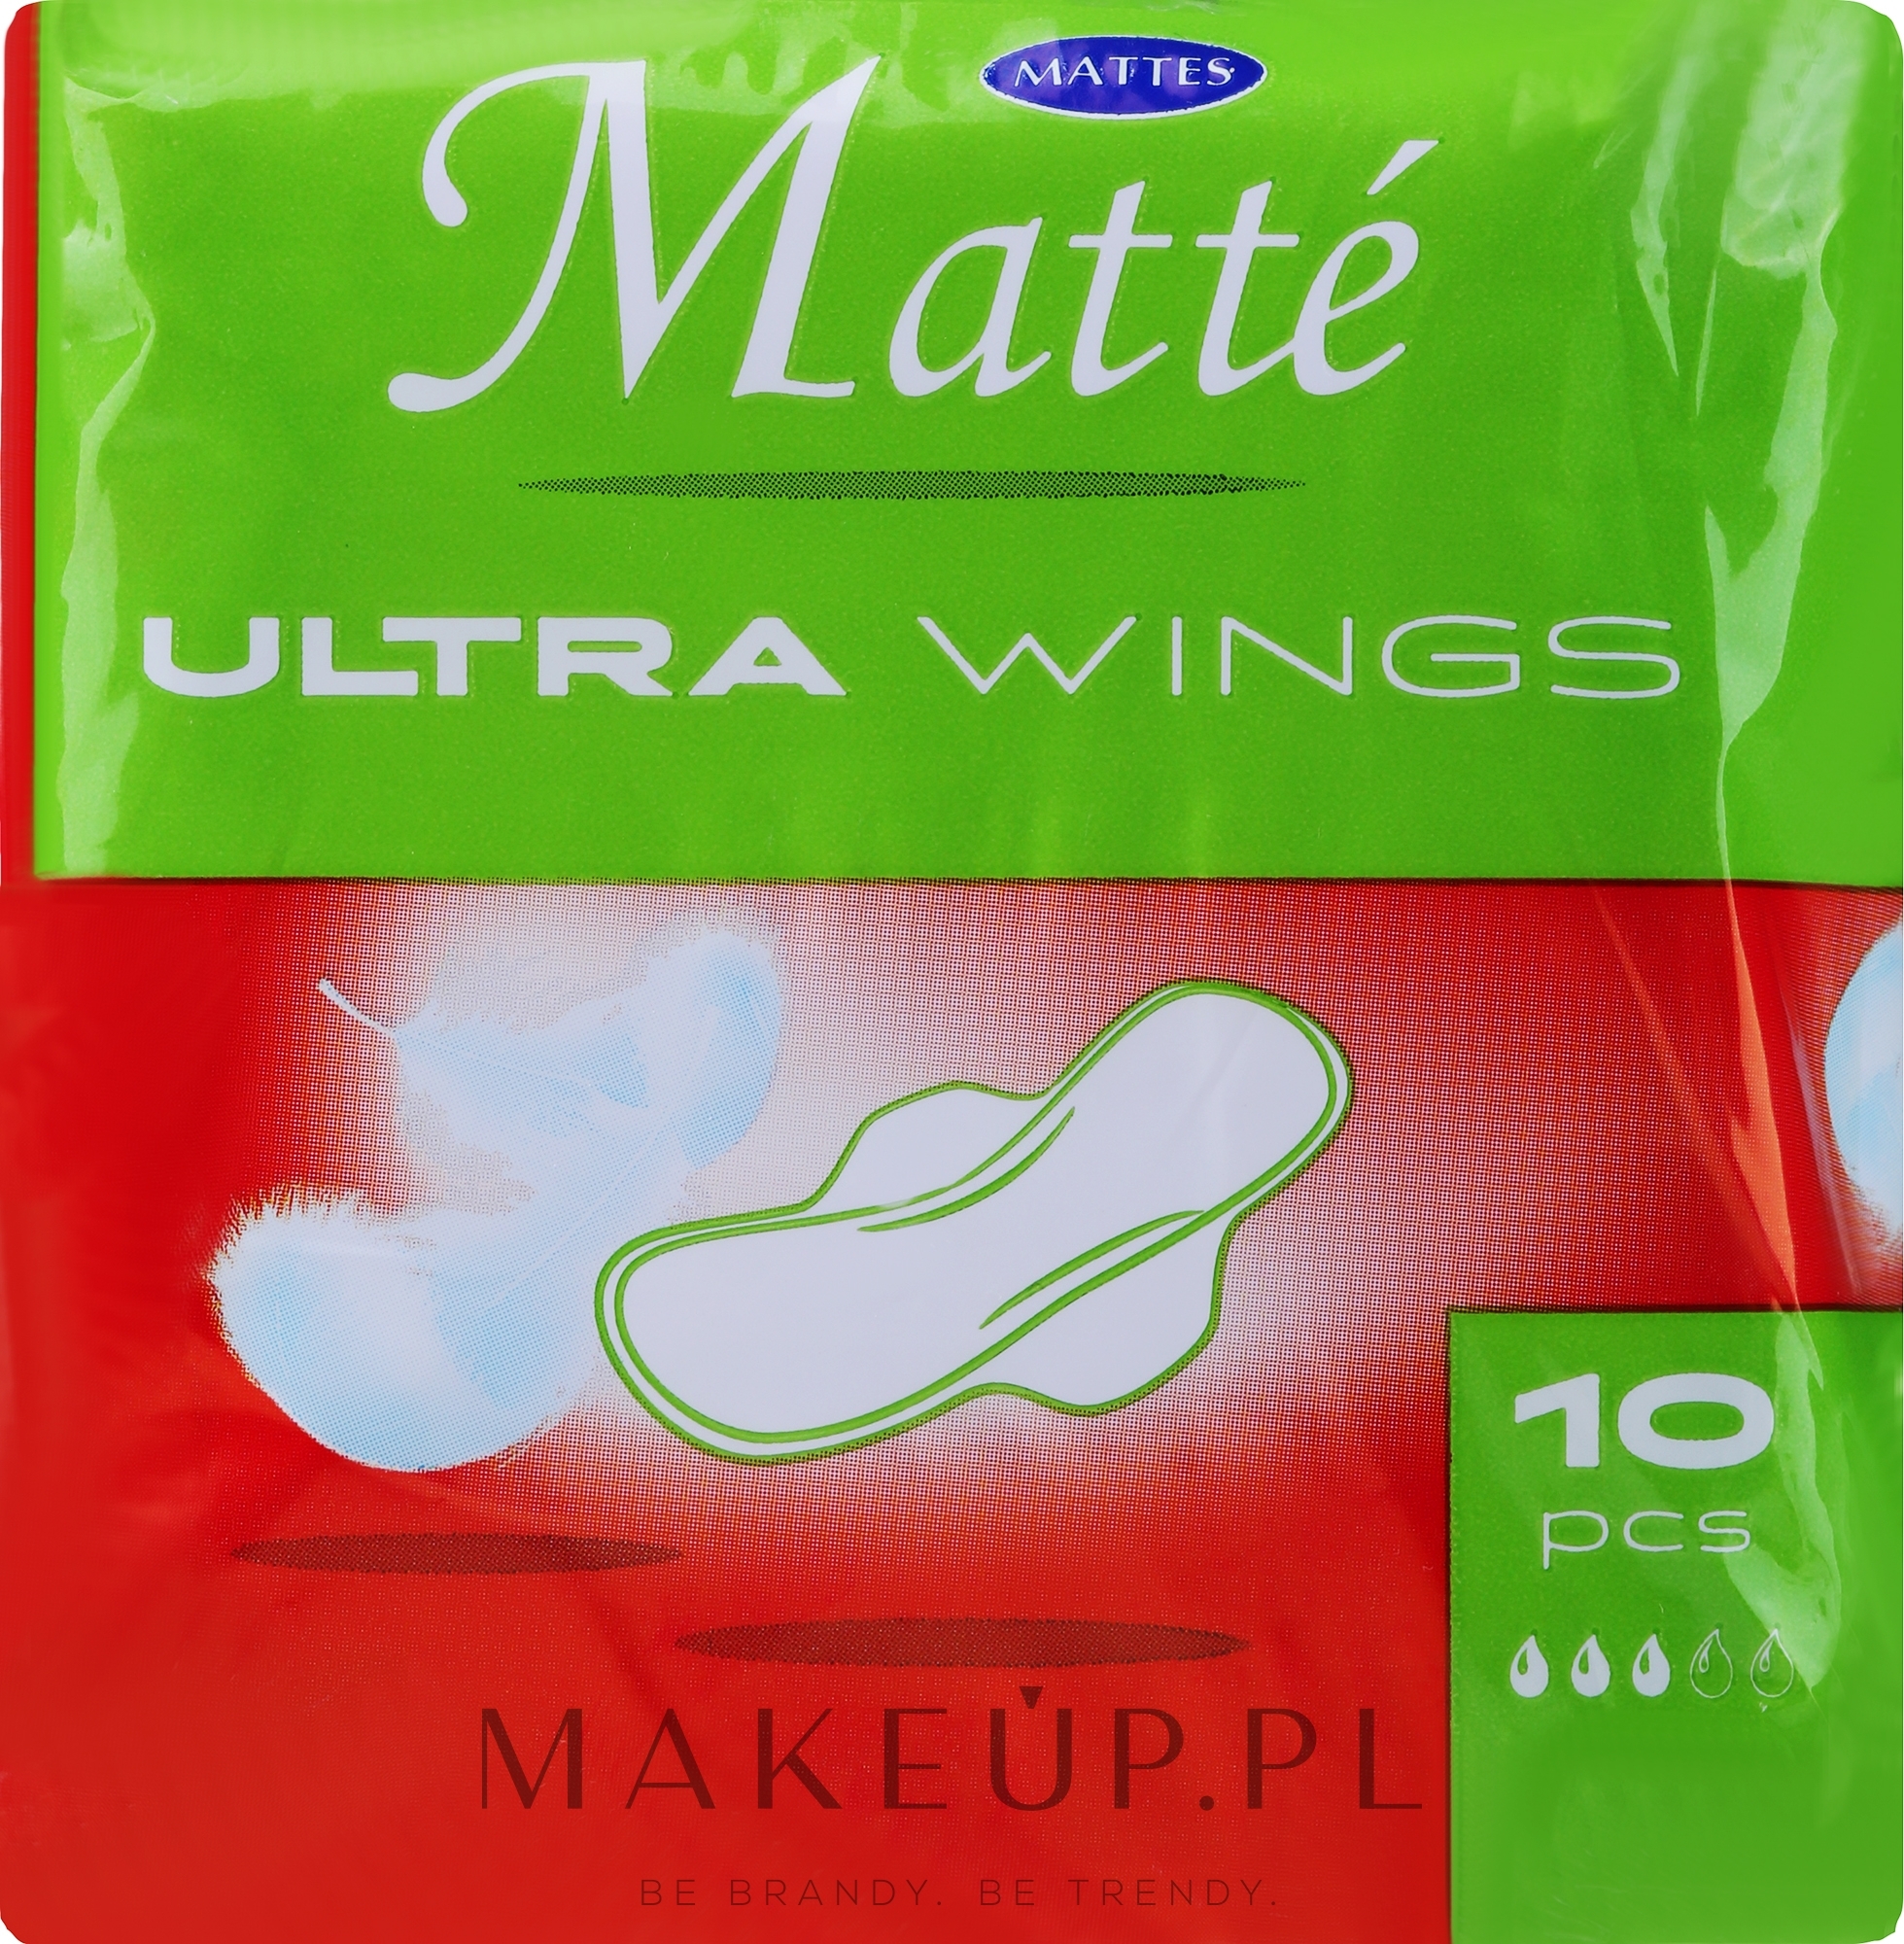 Podpaski higieniczne ze skrzydełkami, 10 szt. - Mattes Ultra Wings  — Zdjęcie 10 szt.